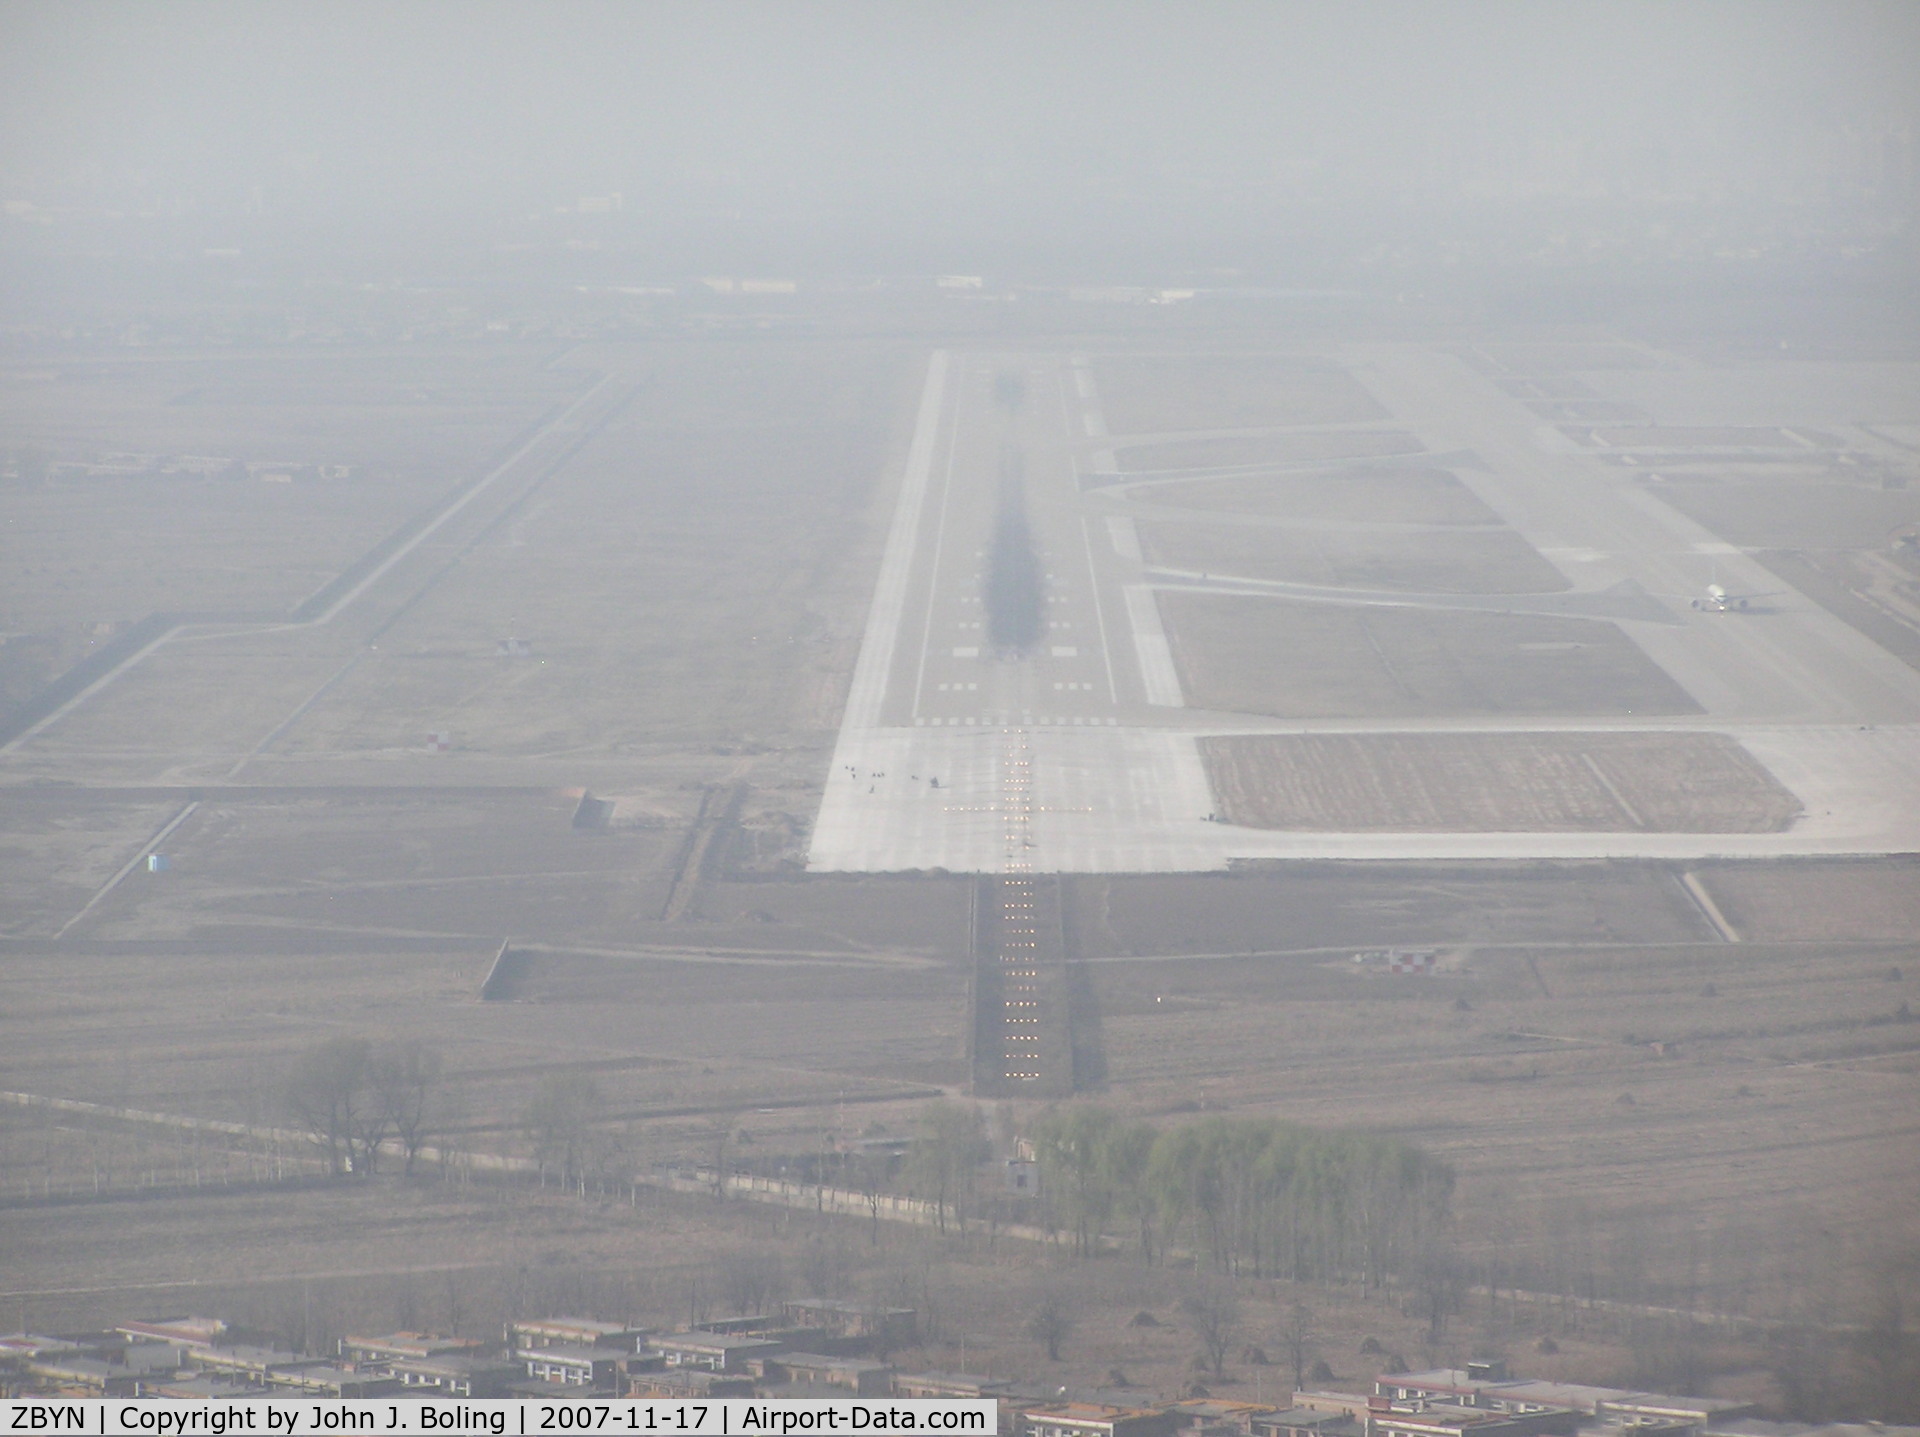 Taiyuan Wusu Airport, Taiyuan, Shanxi China (ZBYN) - Runway 31 at Taiyuan PRC, ZBYN/TYN. Haze/smog keeps vis low.